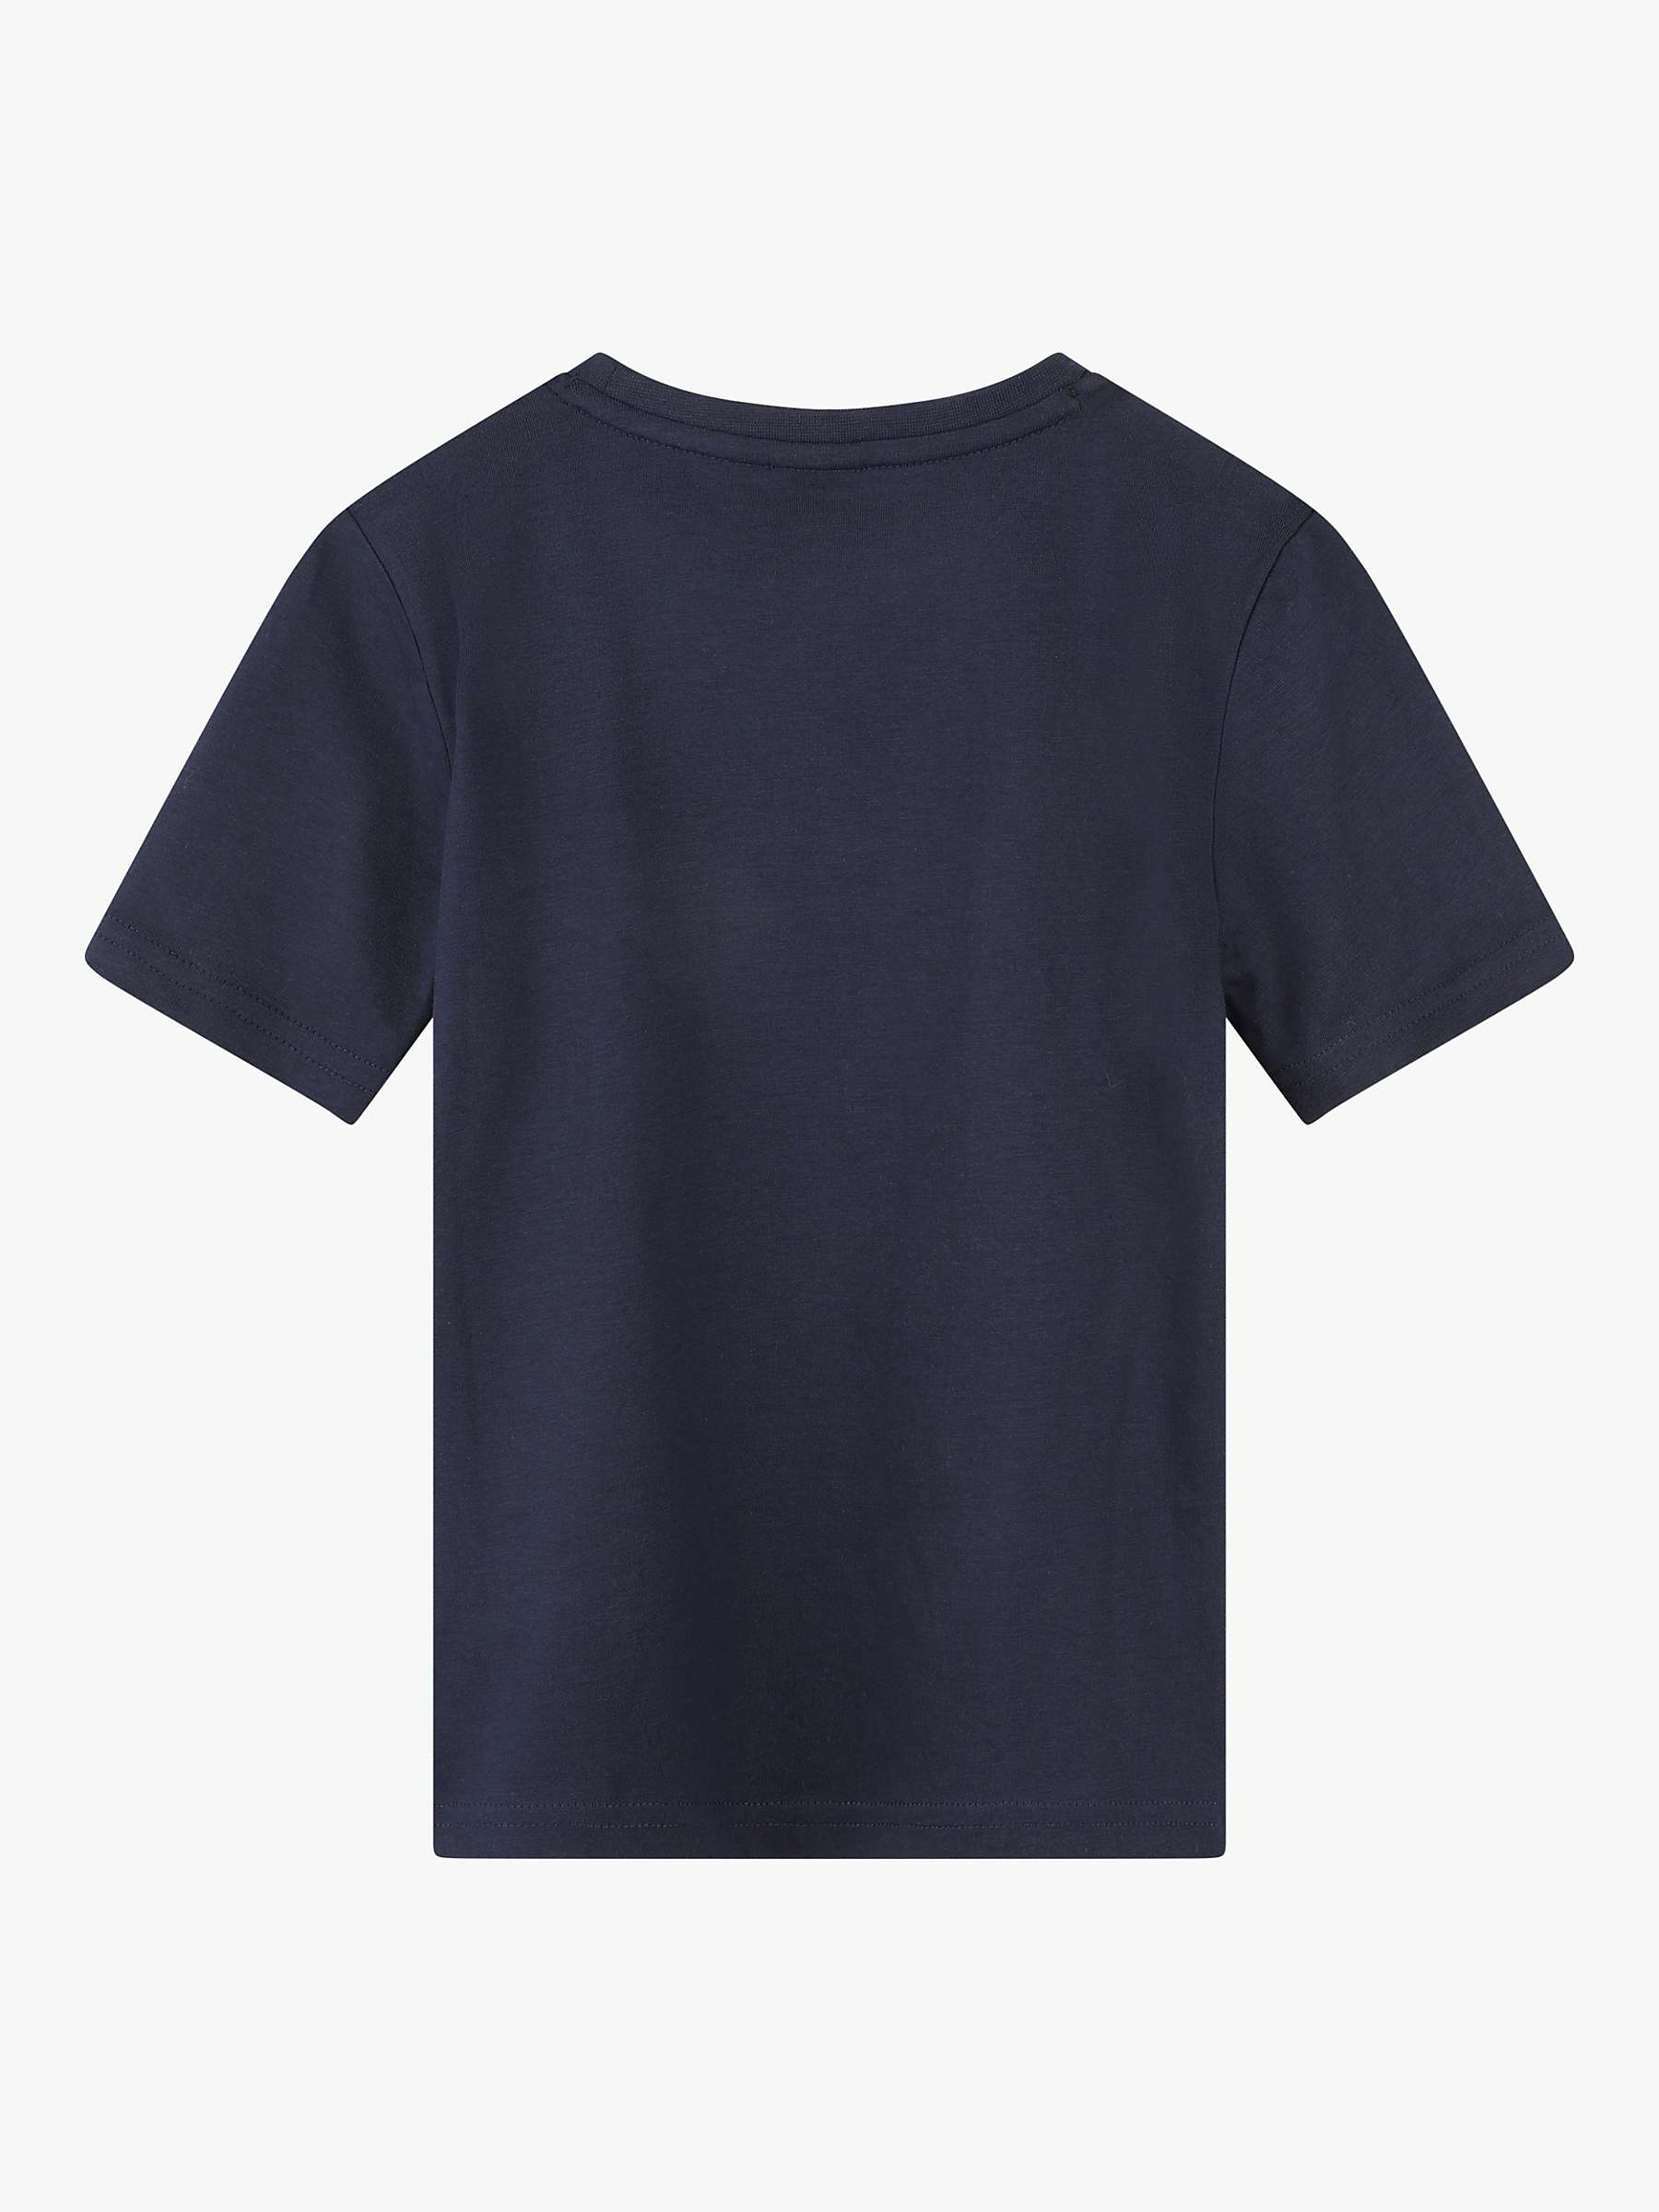 Buy BOSS Kids' Embossed Logo Short Sleeve T-Shirt, Navy Online at johnlewis.com